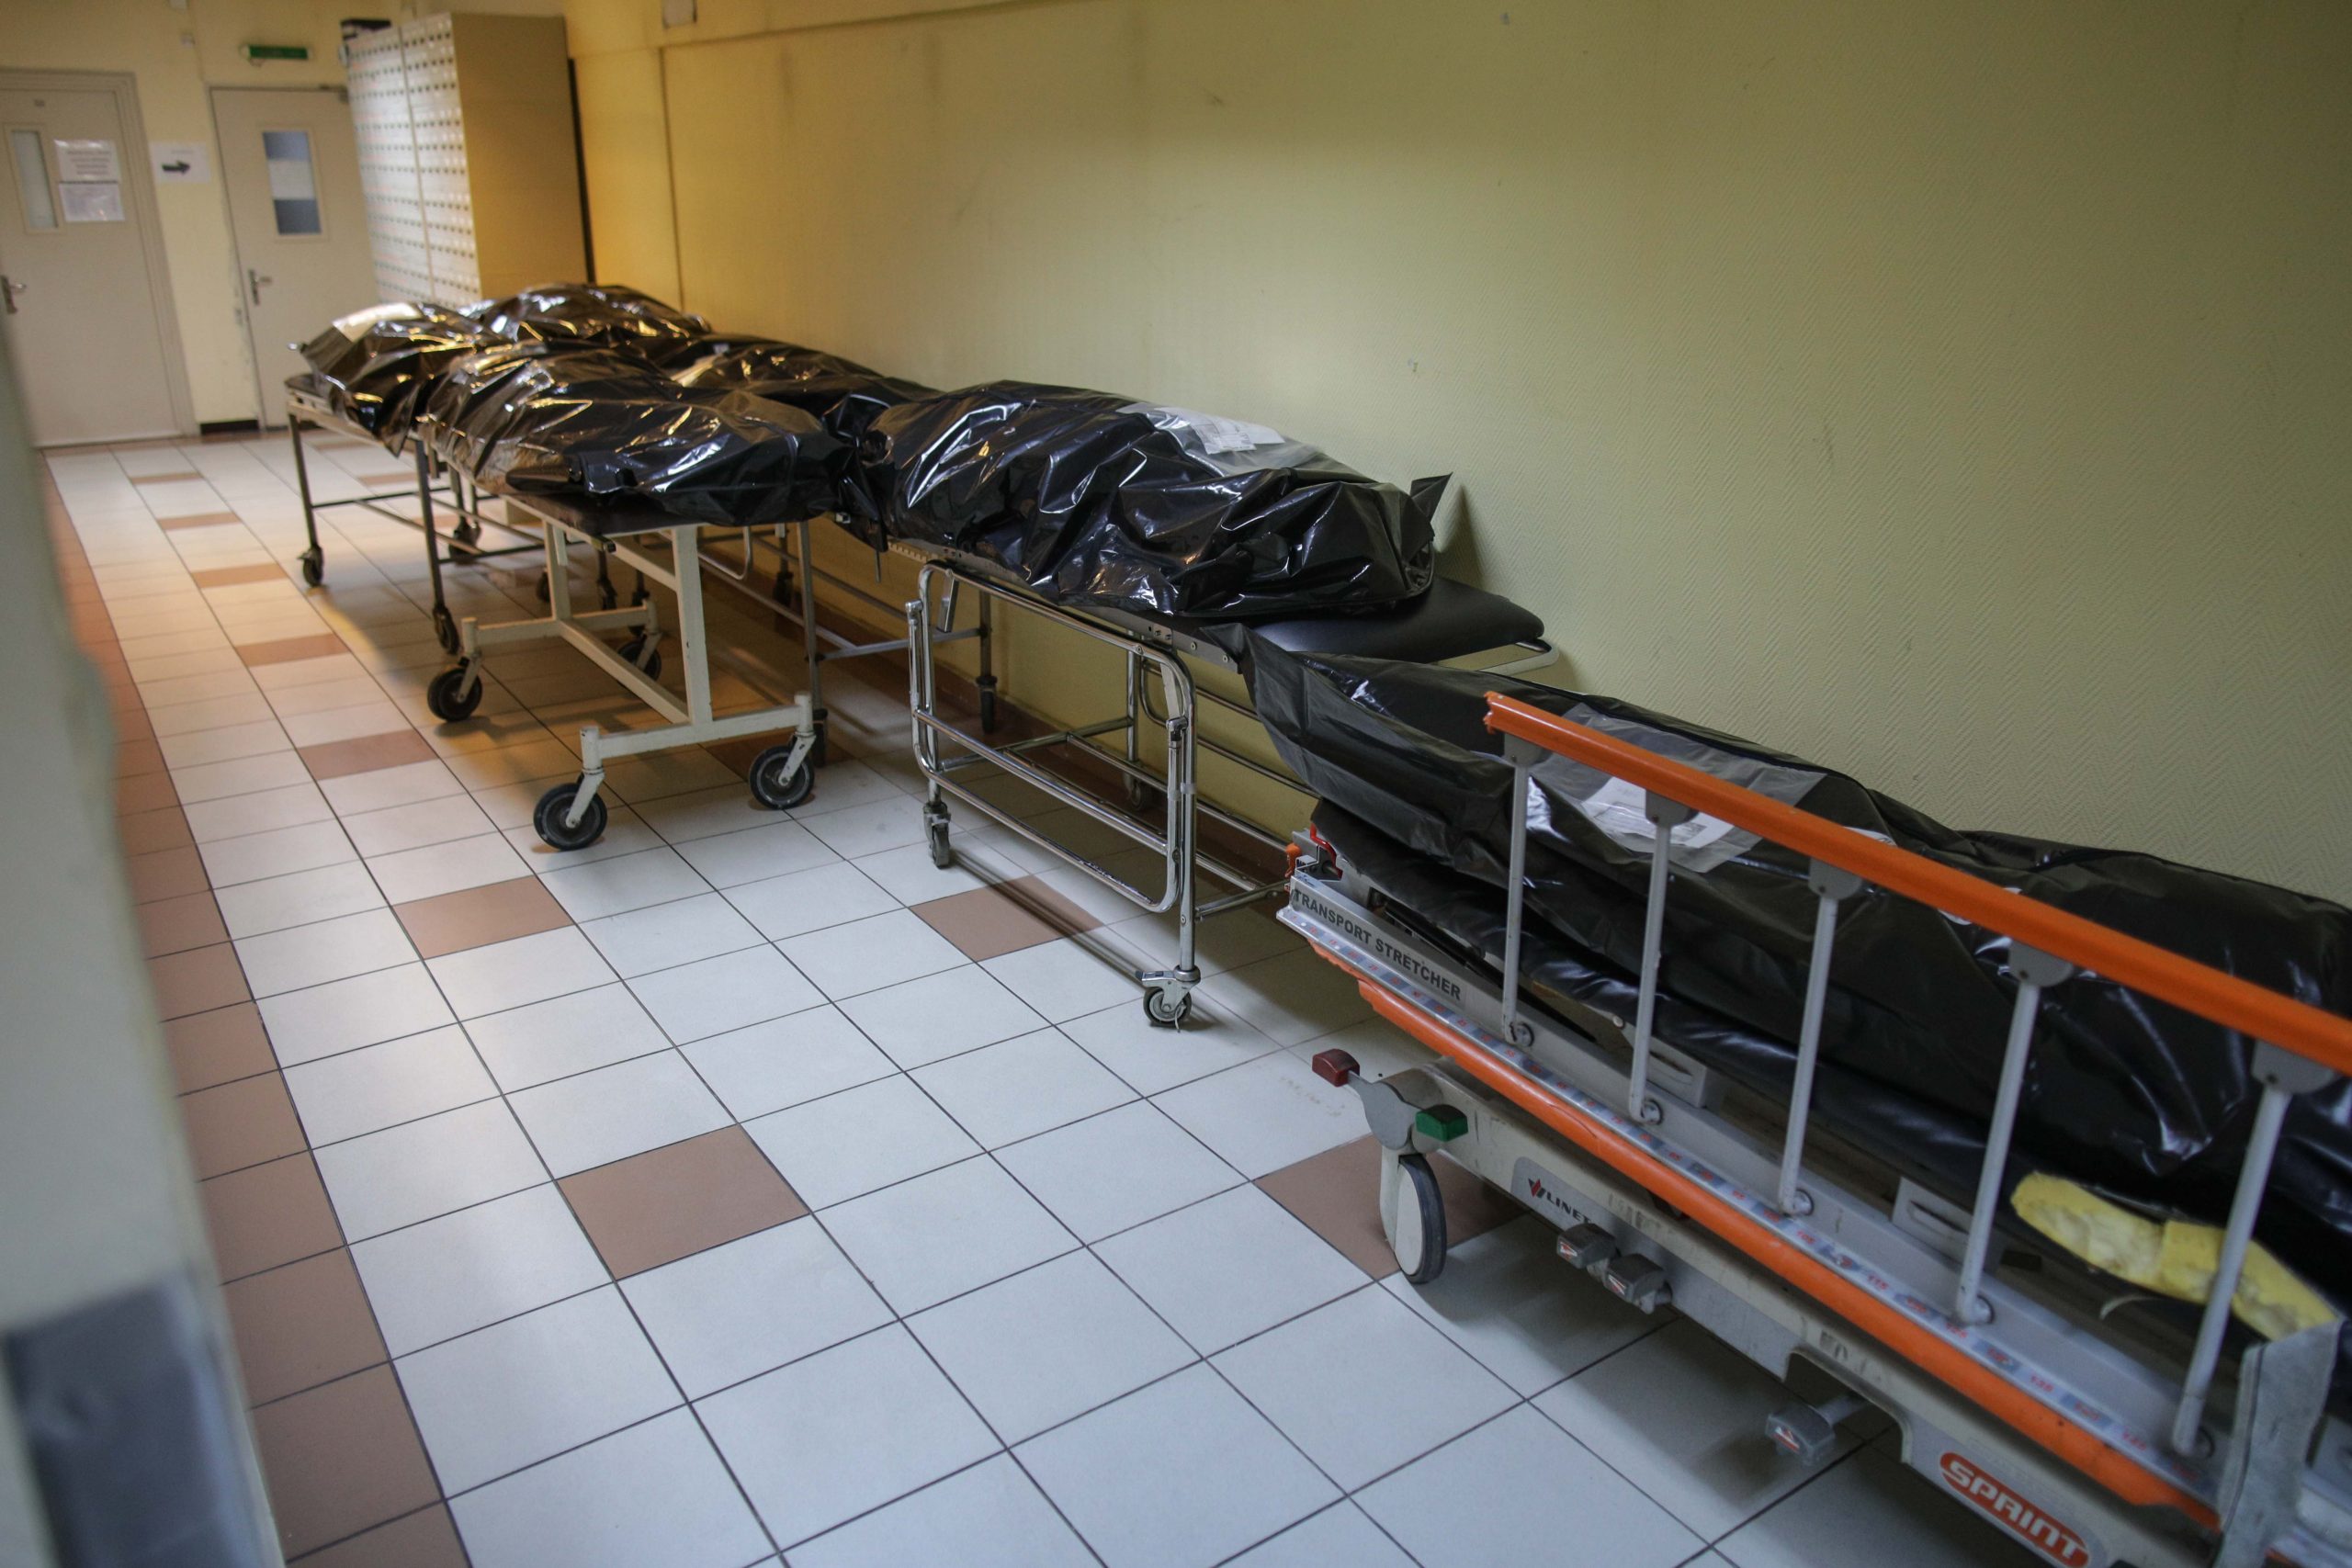 Autopsierii de la morga Spitalului Județean Suceva, trimiși în judecată pentru mită, înșelăciune și furt